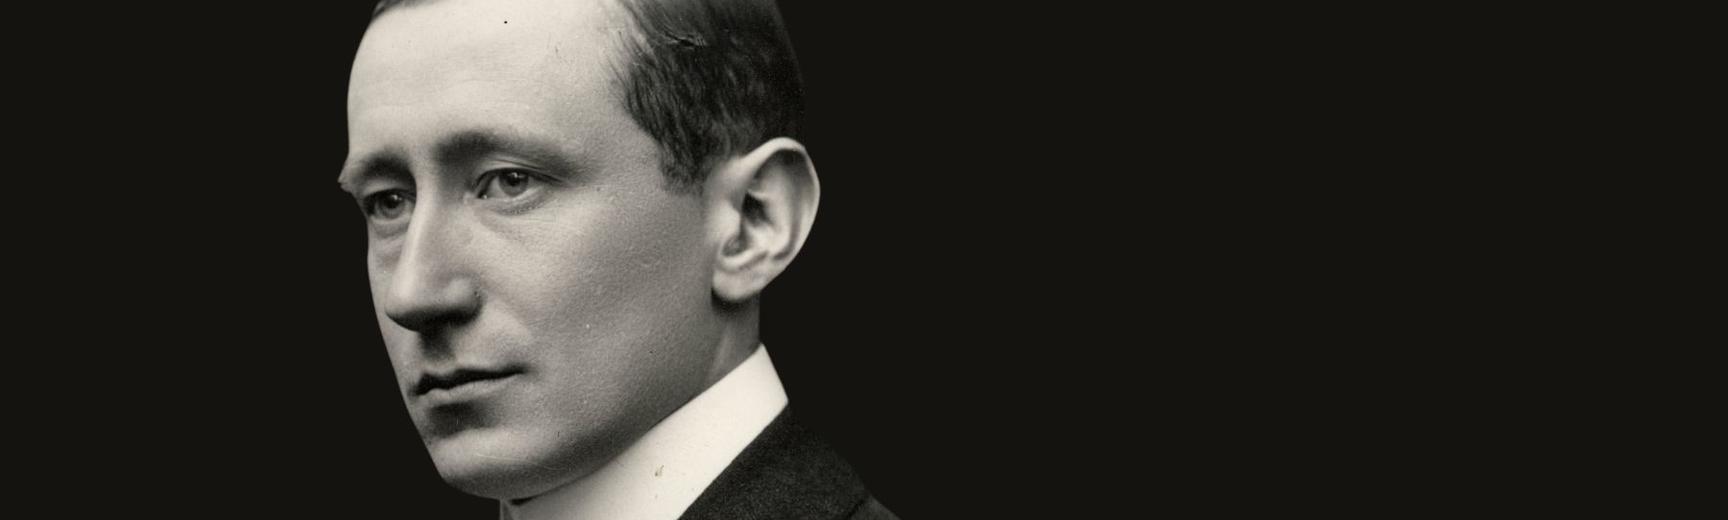 34711 Photographic portrait of Guglielmo Marconi 20th century